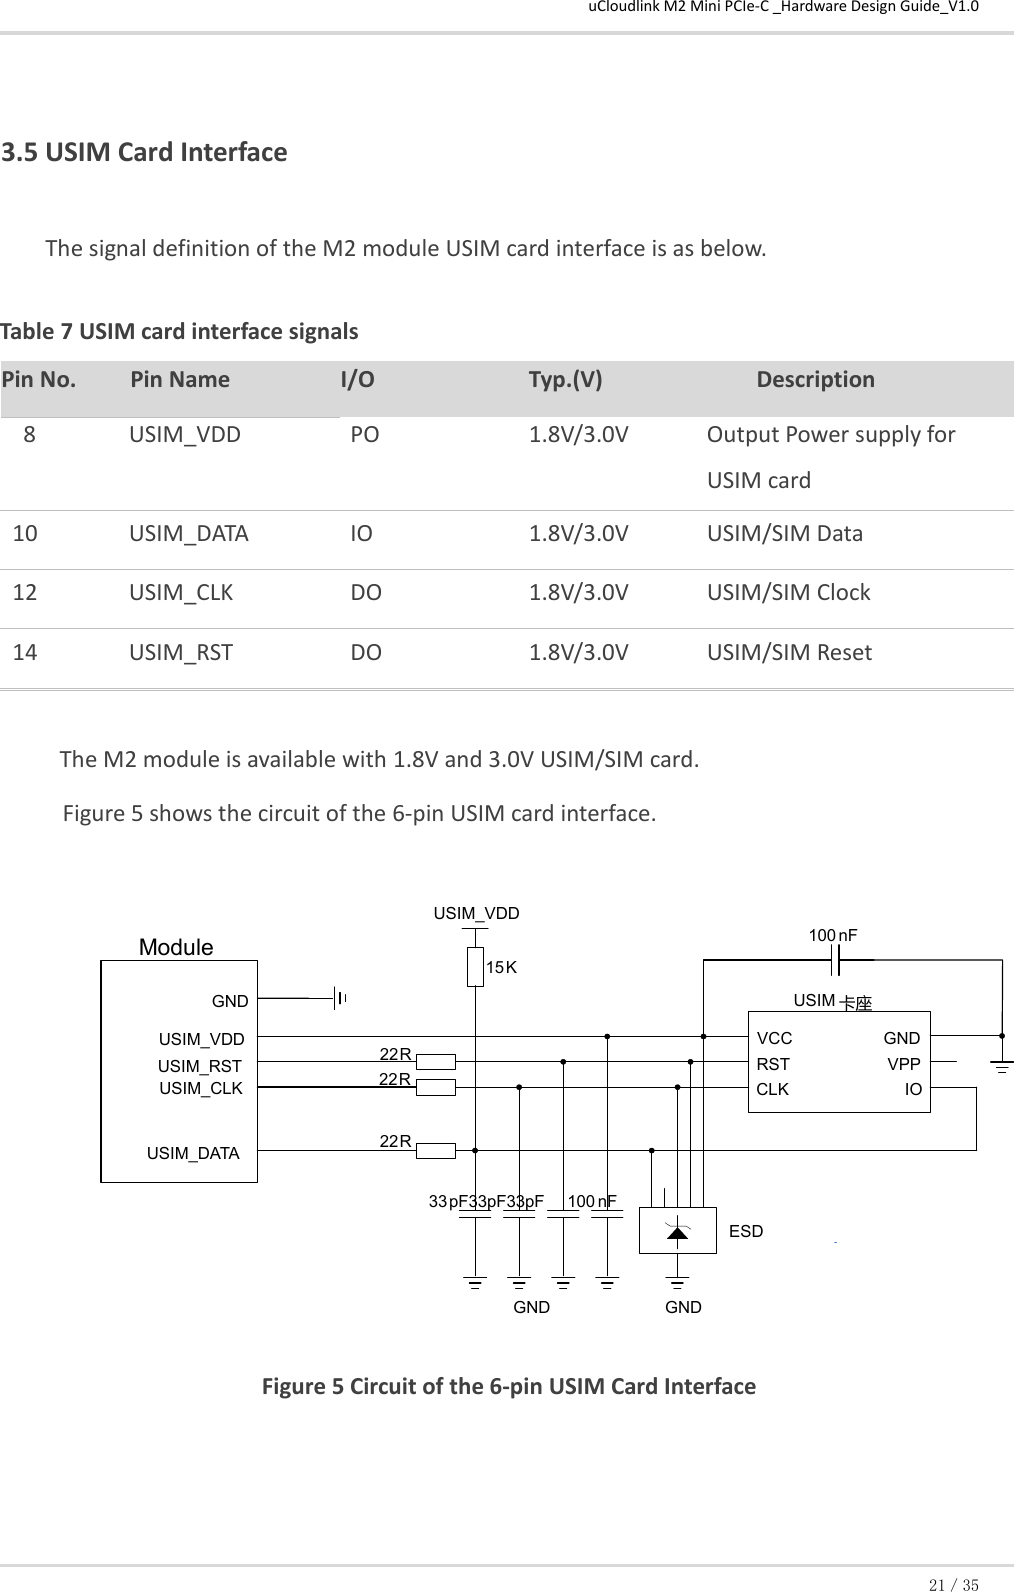 uCloudlink M2 Mini PCIe-C _Hardware Design Guide_V1.0 21／35    3.5 USIM Card Interface The signal definition of the M2 module USIM card interface is as below.   Table 7 USIM card interface signals Pin No. Pin Name I/O Typ.(V) Description 8 USIM_VDD PO  1.8V/3.0V  Output Power supply for USIM card 10 USIM_DATA IO 1.8V/3.0V USIM/SIM Data  12 USIM_CLK DO 1.8V/3.0V USIM/SIM Clock  14 USIM_RST DO  1.8V/3.0V USIM/SIM Reset   The M2 module is available with 1.8V and 3.0V USIM/SIM card.     Figure 5 shows the circuit of the 6-pin USIM card interface.   Figure 5 Circuit of the 6-pin USIM Card Interface  USIM_VDD GND USIM_RST USIM_CLK USIM_DATA 22 R 22 R 22 R 100 nF USIM 卡座 GND ESD 33 pF33pF33pF VCC RST CLK IO VPP GND GND 100 nF 15 K Module USIM_VDD 